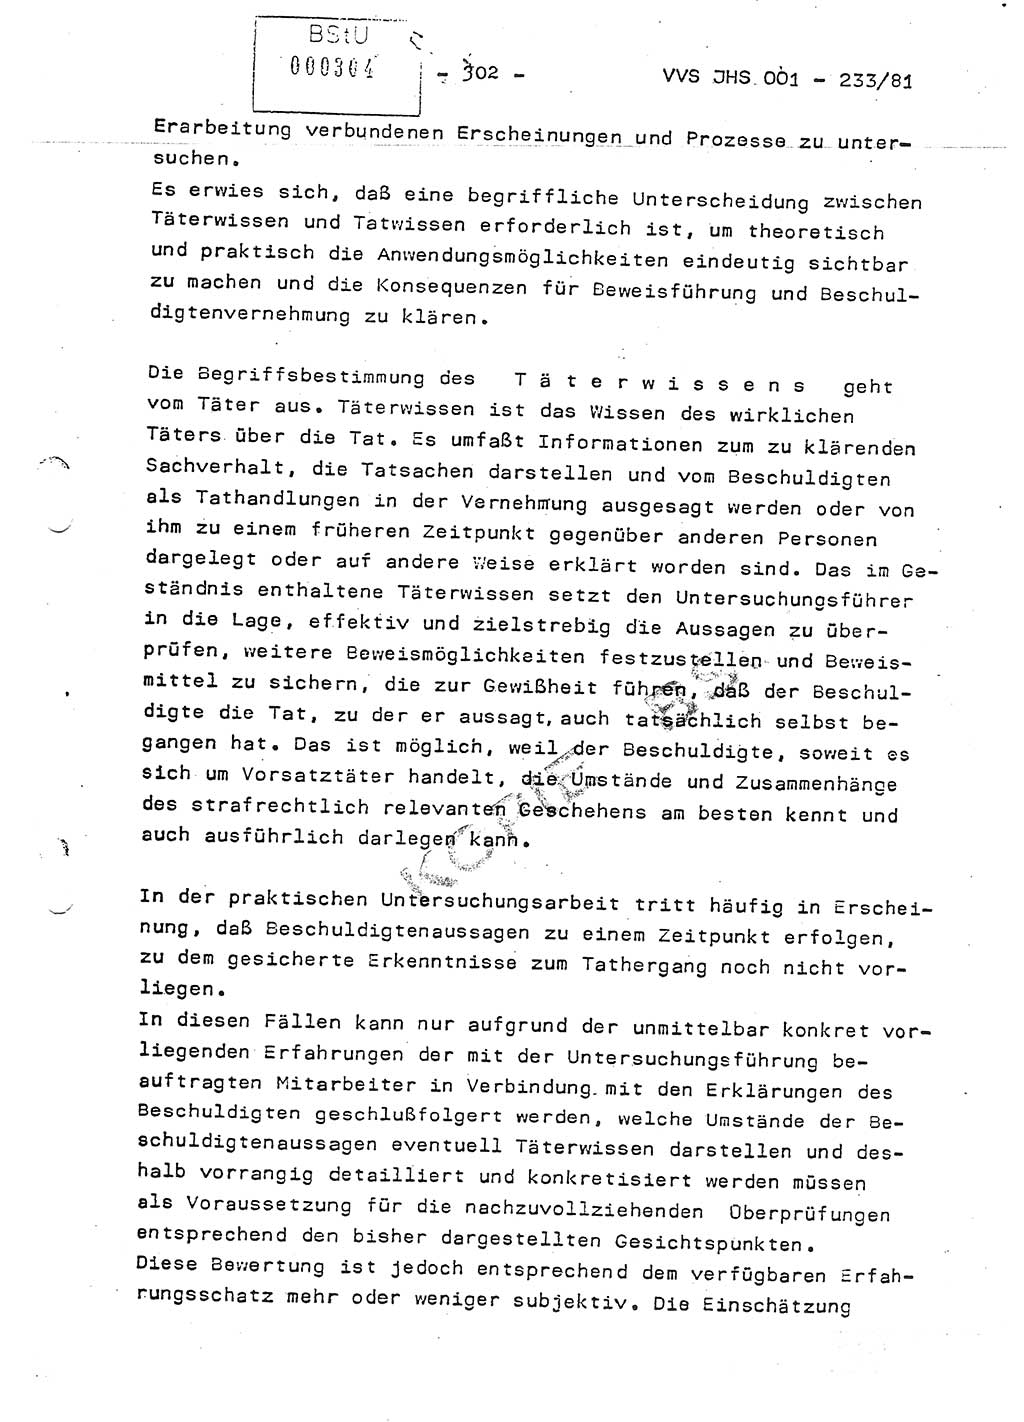 Dissertation Oberstleutnant Horst Zank (JHS), Oberstleutnant Dr. Karl-Heinz Knoblauch (JHS), Oberstleutnant Gustav-Adolf Kowalewski (HA Ⅸ), Oberstleutnant Wolfgang Plötner (HA Ⅸ), Ministerium für Staatssicherheit (MfS) [Deutsche Demokratische Republik (DDR)], Juristische Hochschule (JHS), Vertrauliche Verschlußsache (VVS) o001-233/81, Potsdam 1981, Blatt 302 (Diss. MfS DDR JHS VVS o001-233/81 1981, Bl. 302)